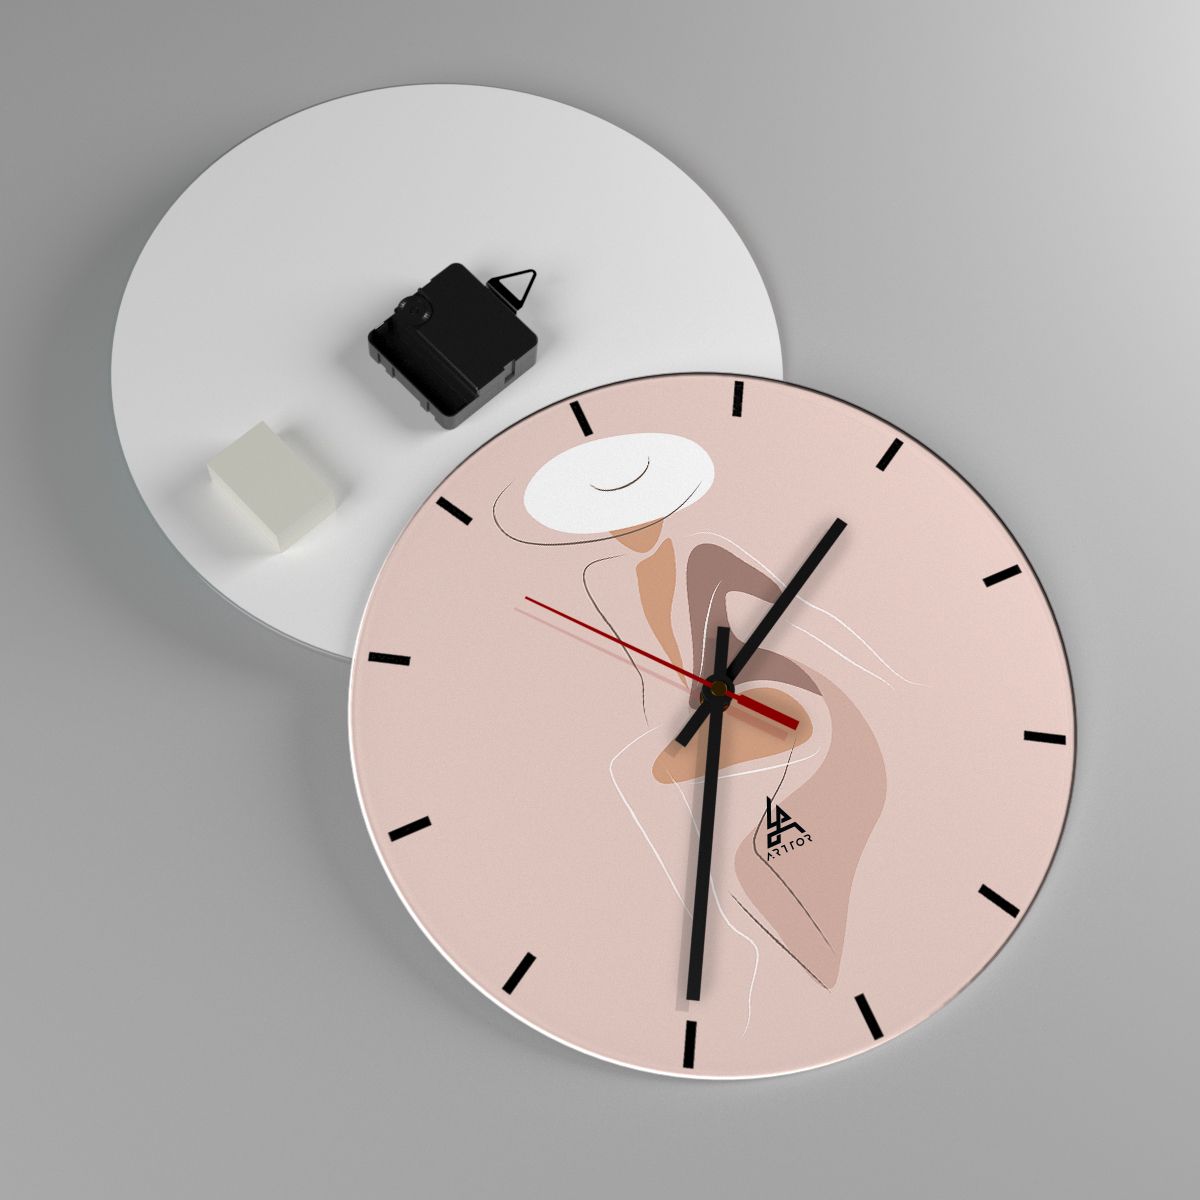 Wall clock Graphics, Wall clock Woman, Wall clock Woman With Hat, Wall clock Fashion, Wall clock Modern Art